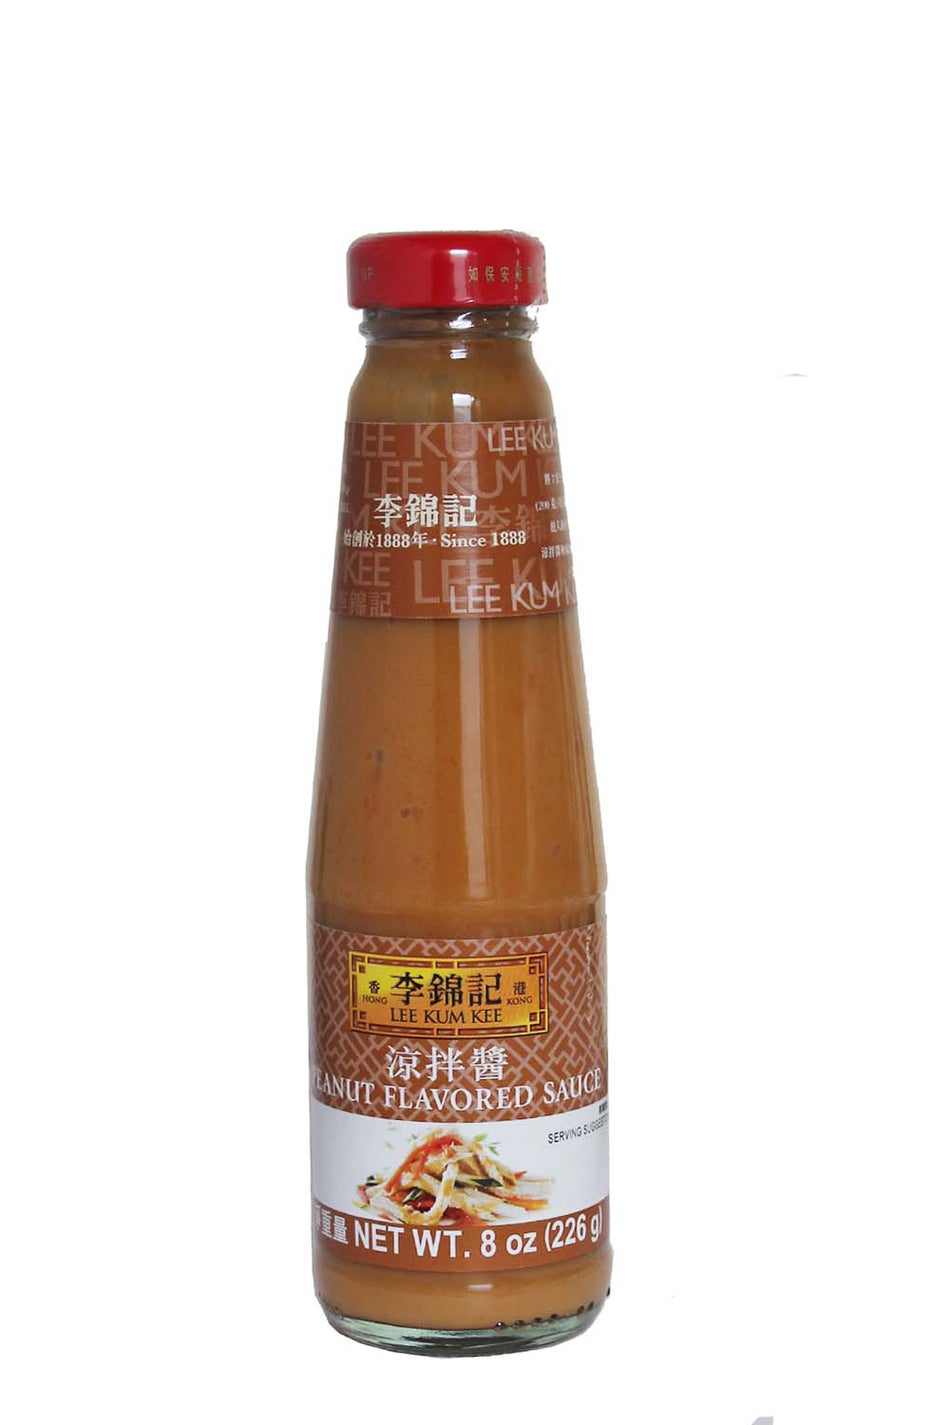 Lee Kum Kee Peanut Flavored Sauce